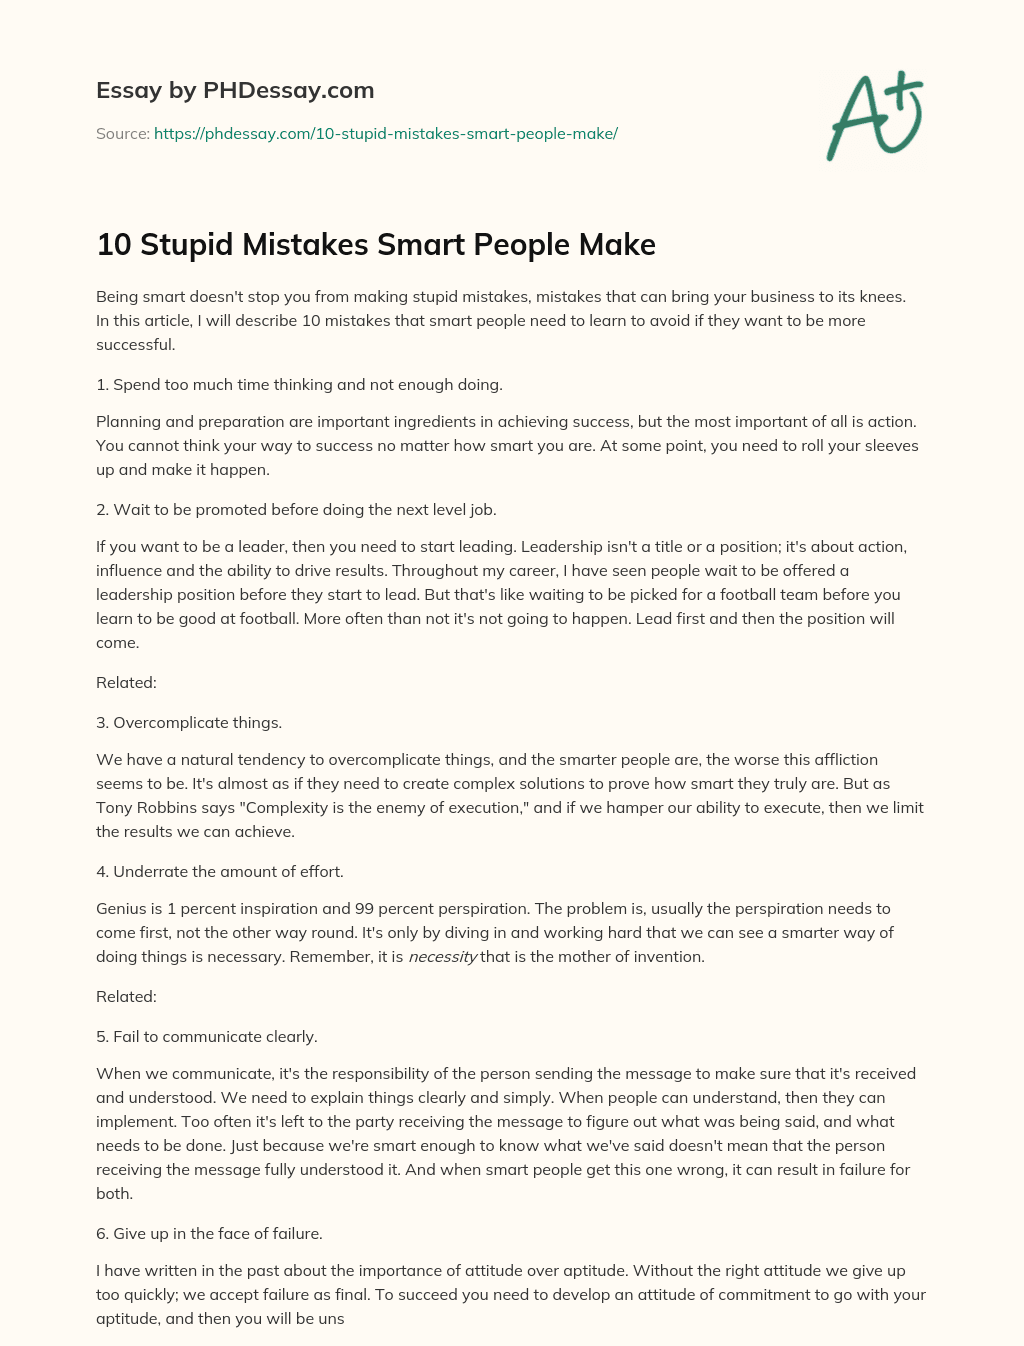 10 Stupid Mistakes Smart People Make essay